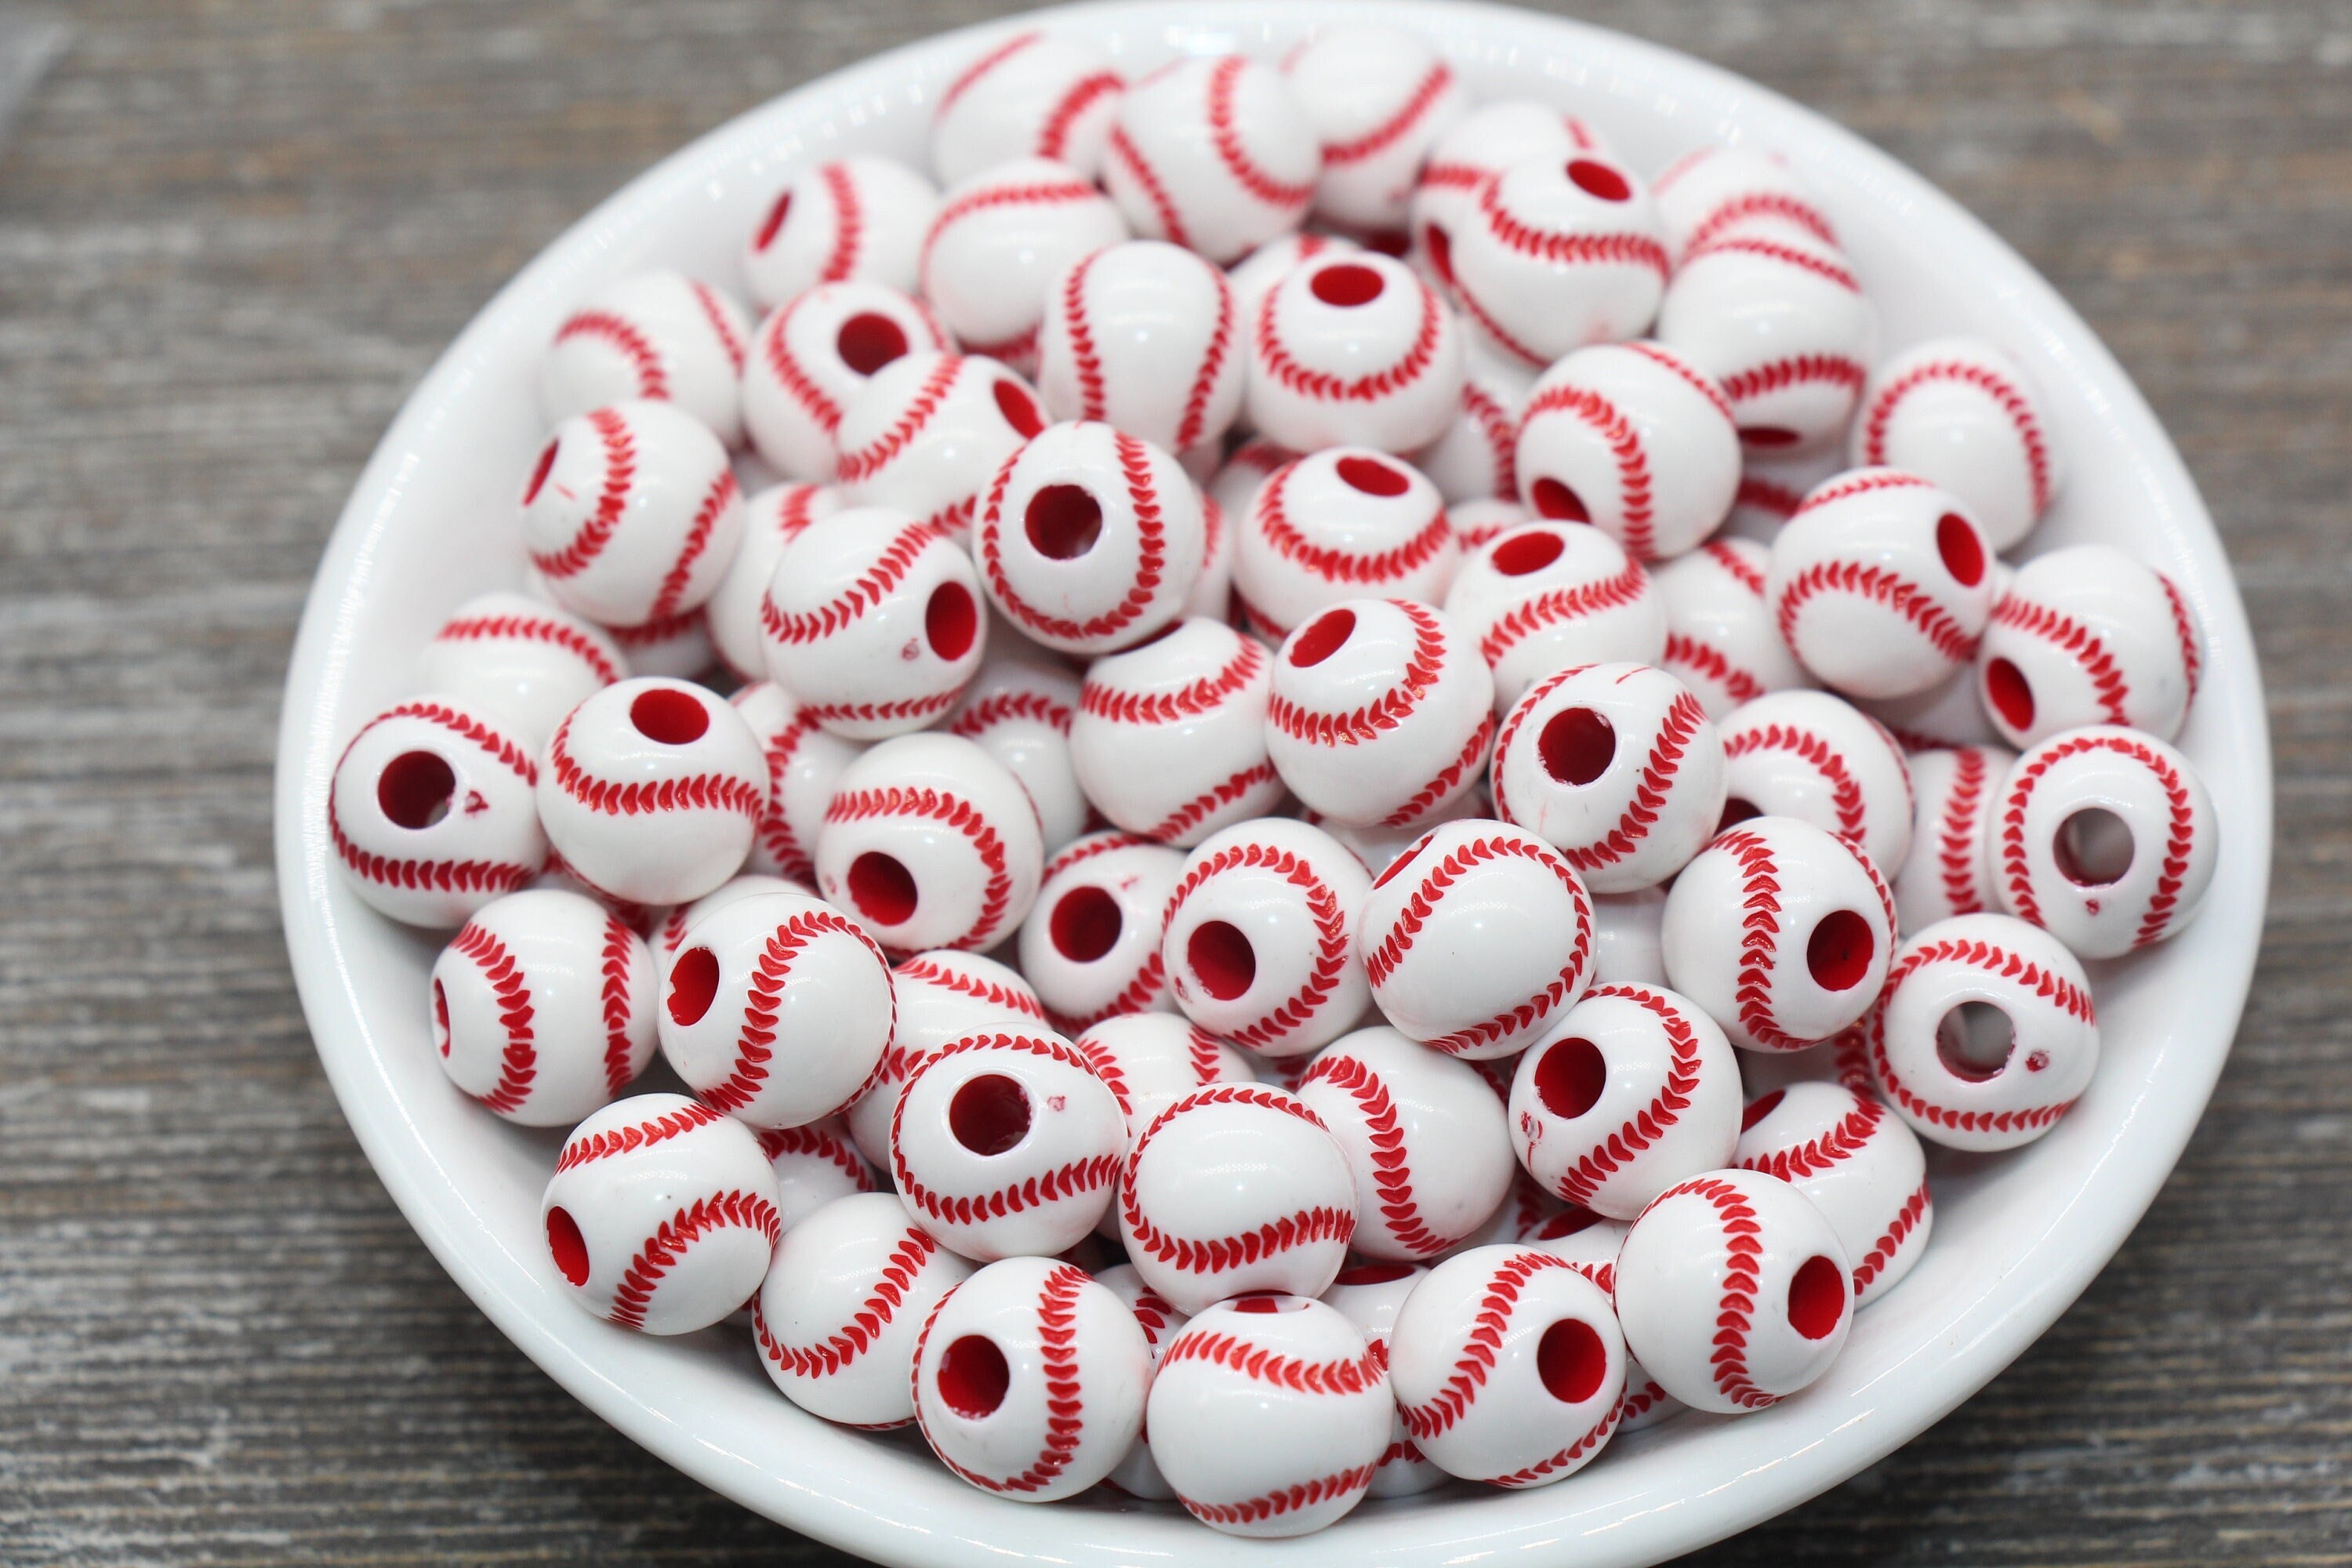 24 Pcs Baseball Shaped Beads White Red Round Beads Kids Sports